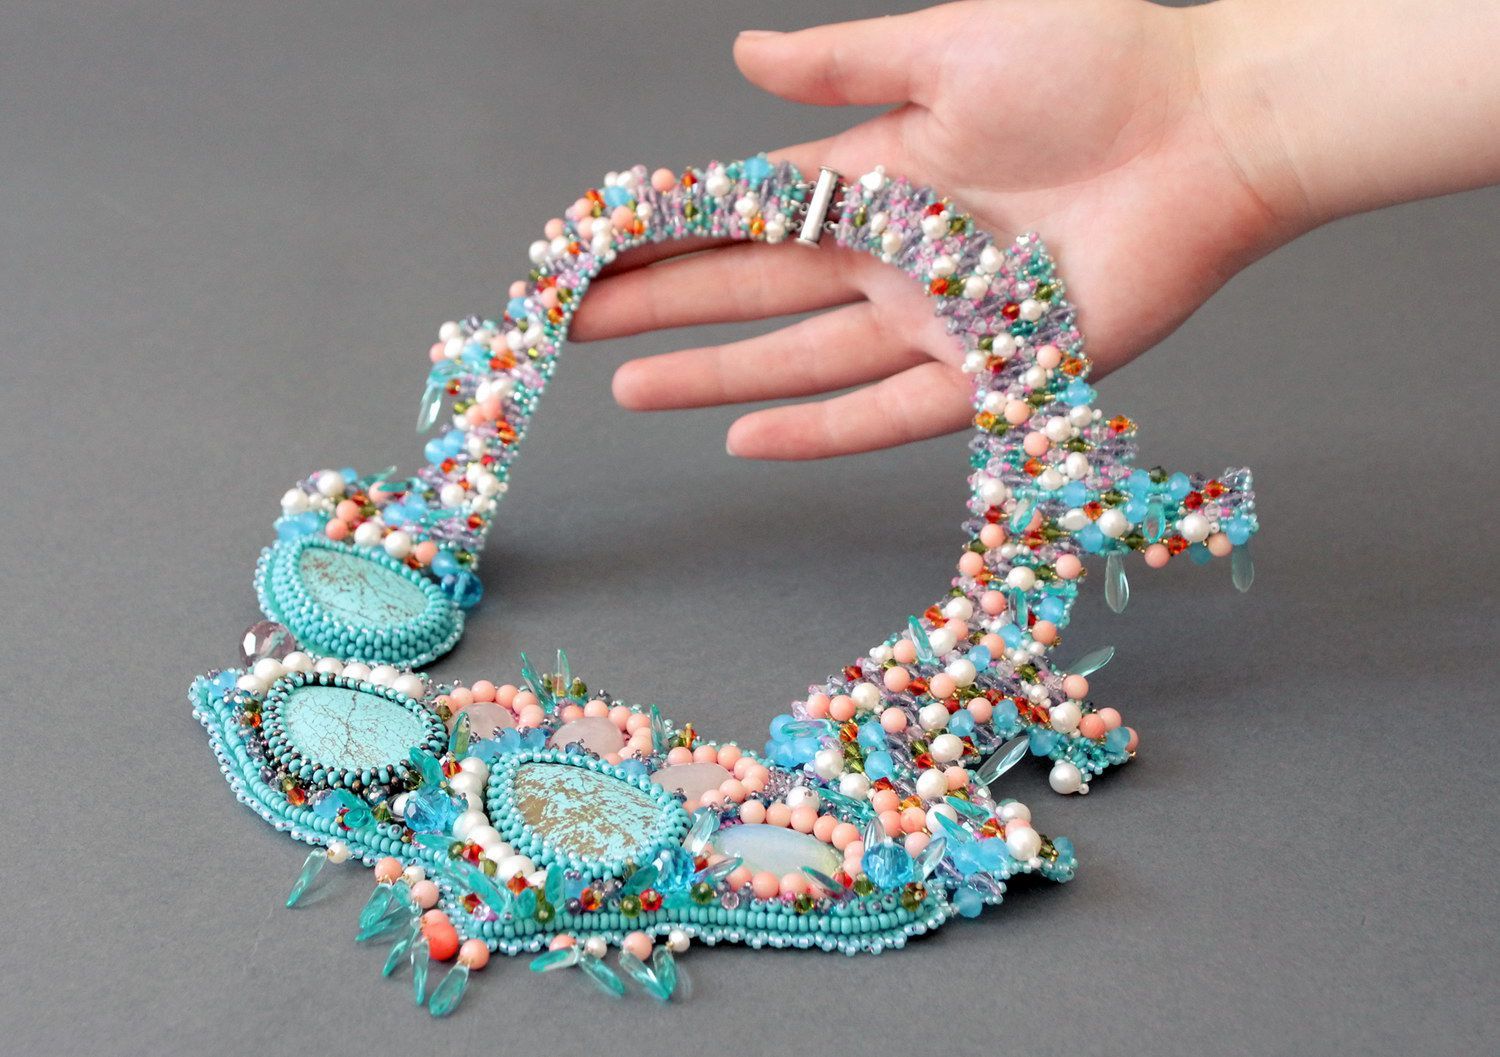 Collier fait main de perles, coraux, grains de verre et cristaux 'Toucher doux' photo 4